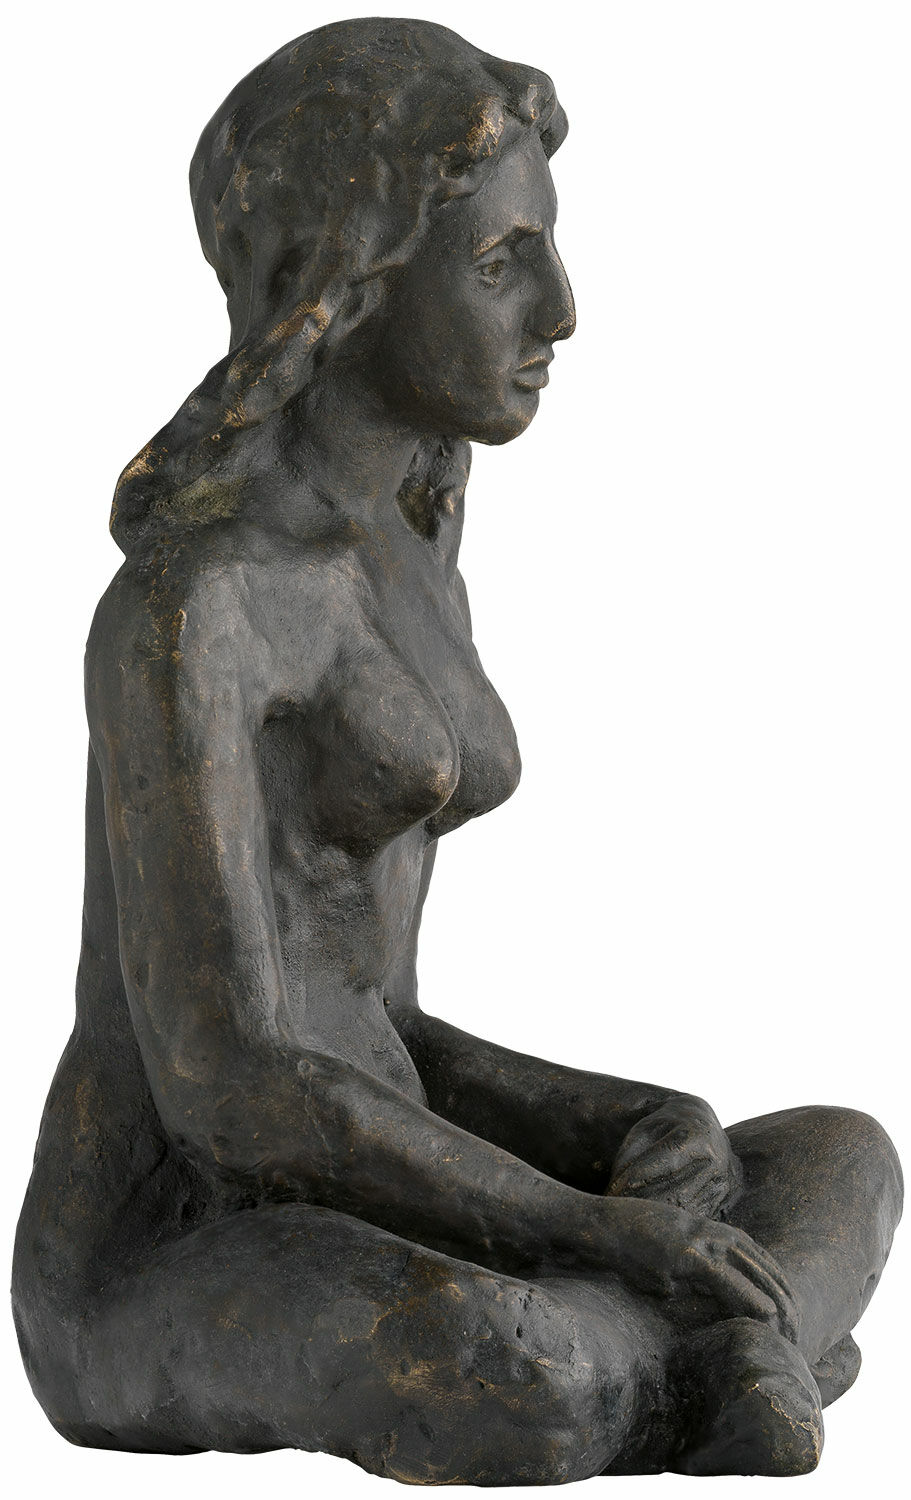 Skulptur "Sitzende" (1912), Bronze von August Macke